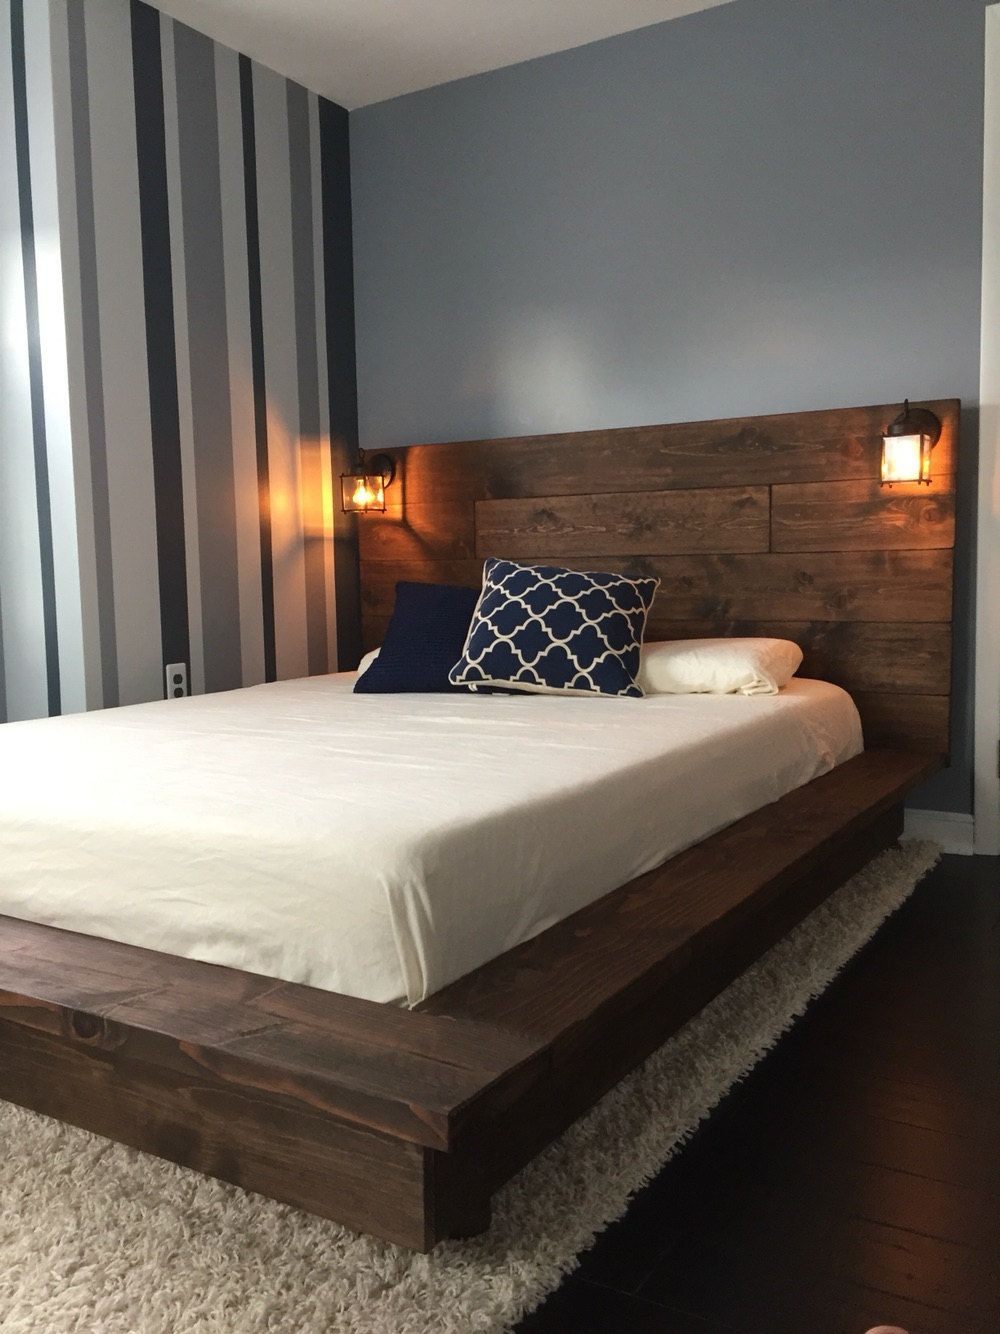 DIY Wooden Bed Platform
 Sale off Floating Wood Platform Bed frame by